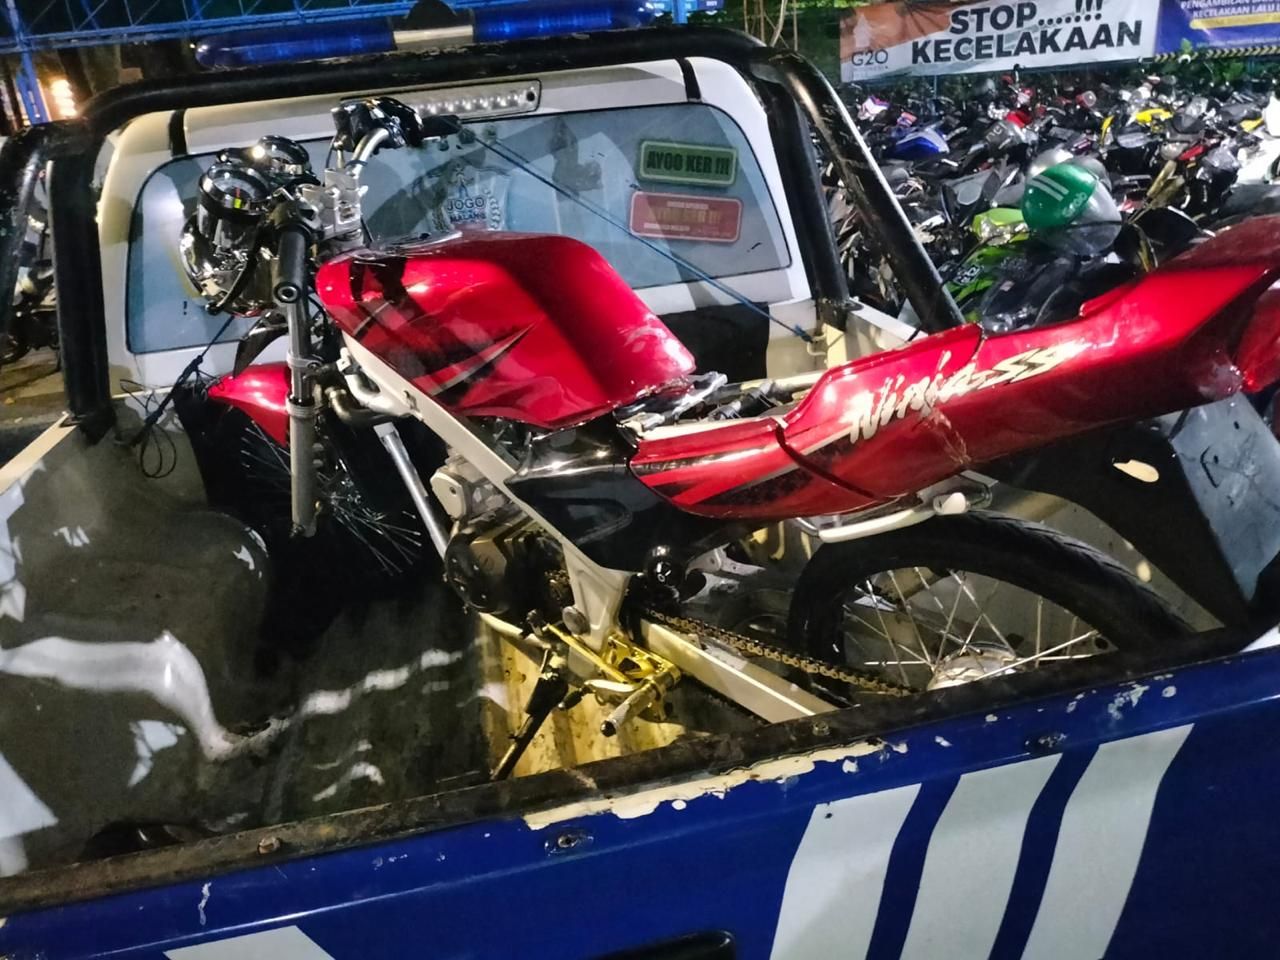 Kecelakaan Toyota Calya Vs Kawasaki Ninja, Pengendara Motor Dilarikan ke RS